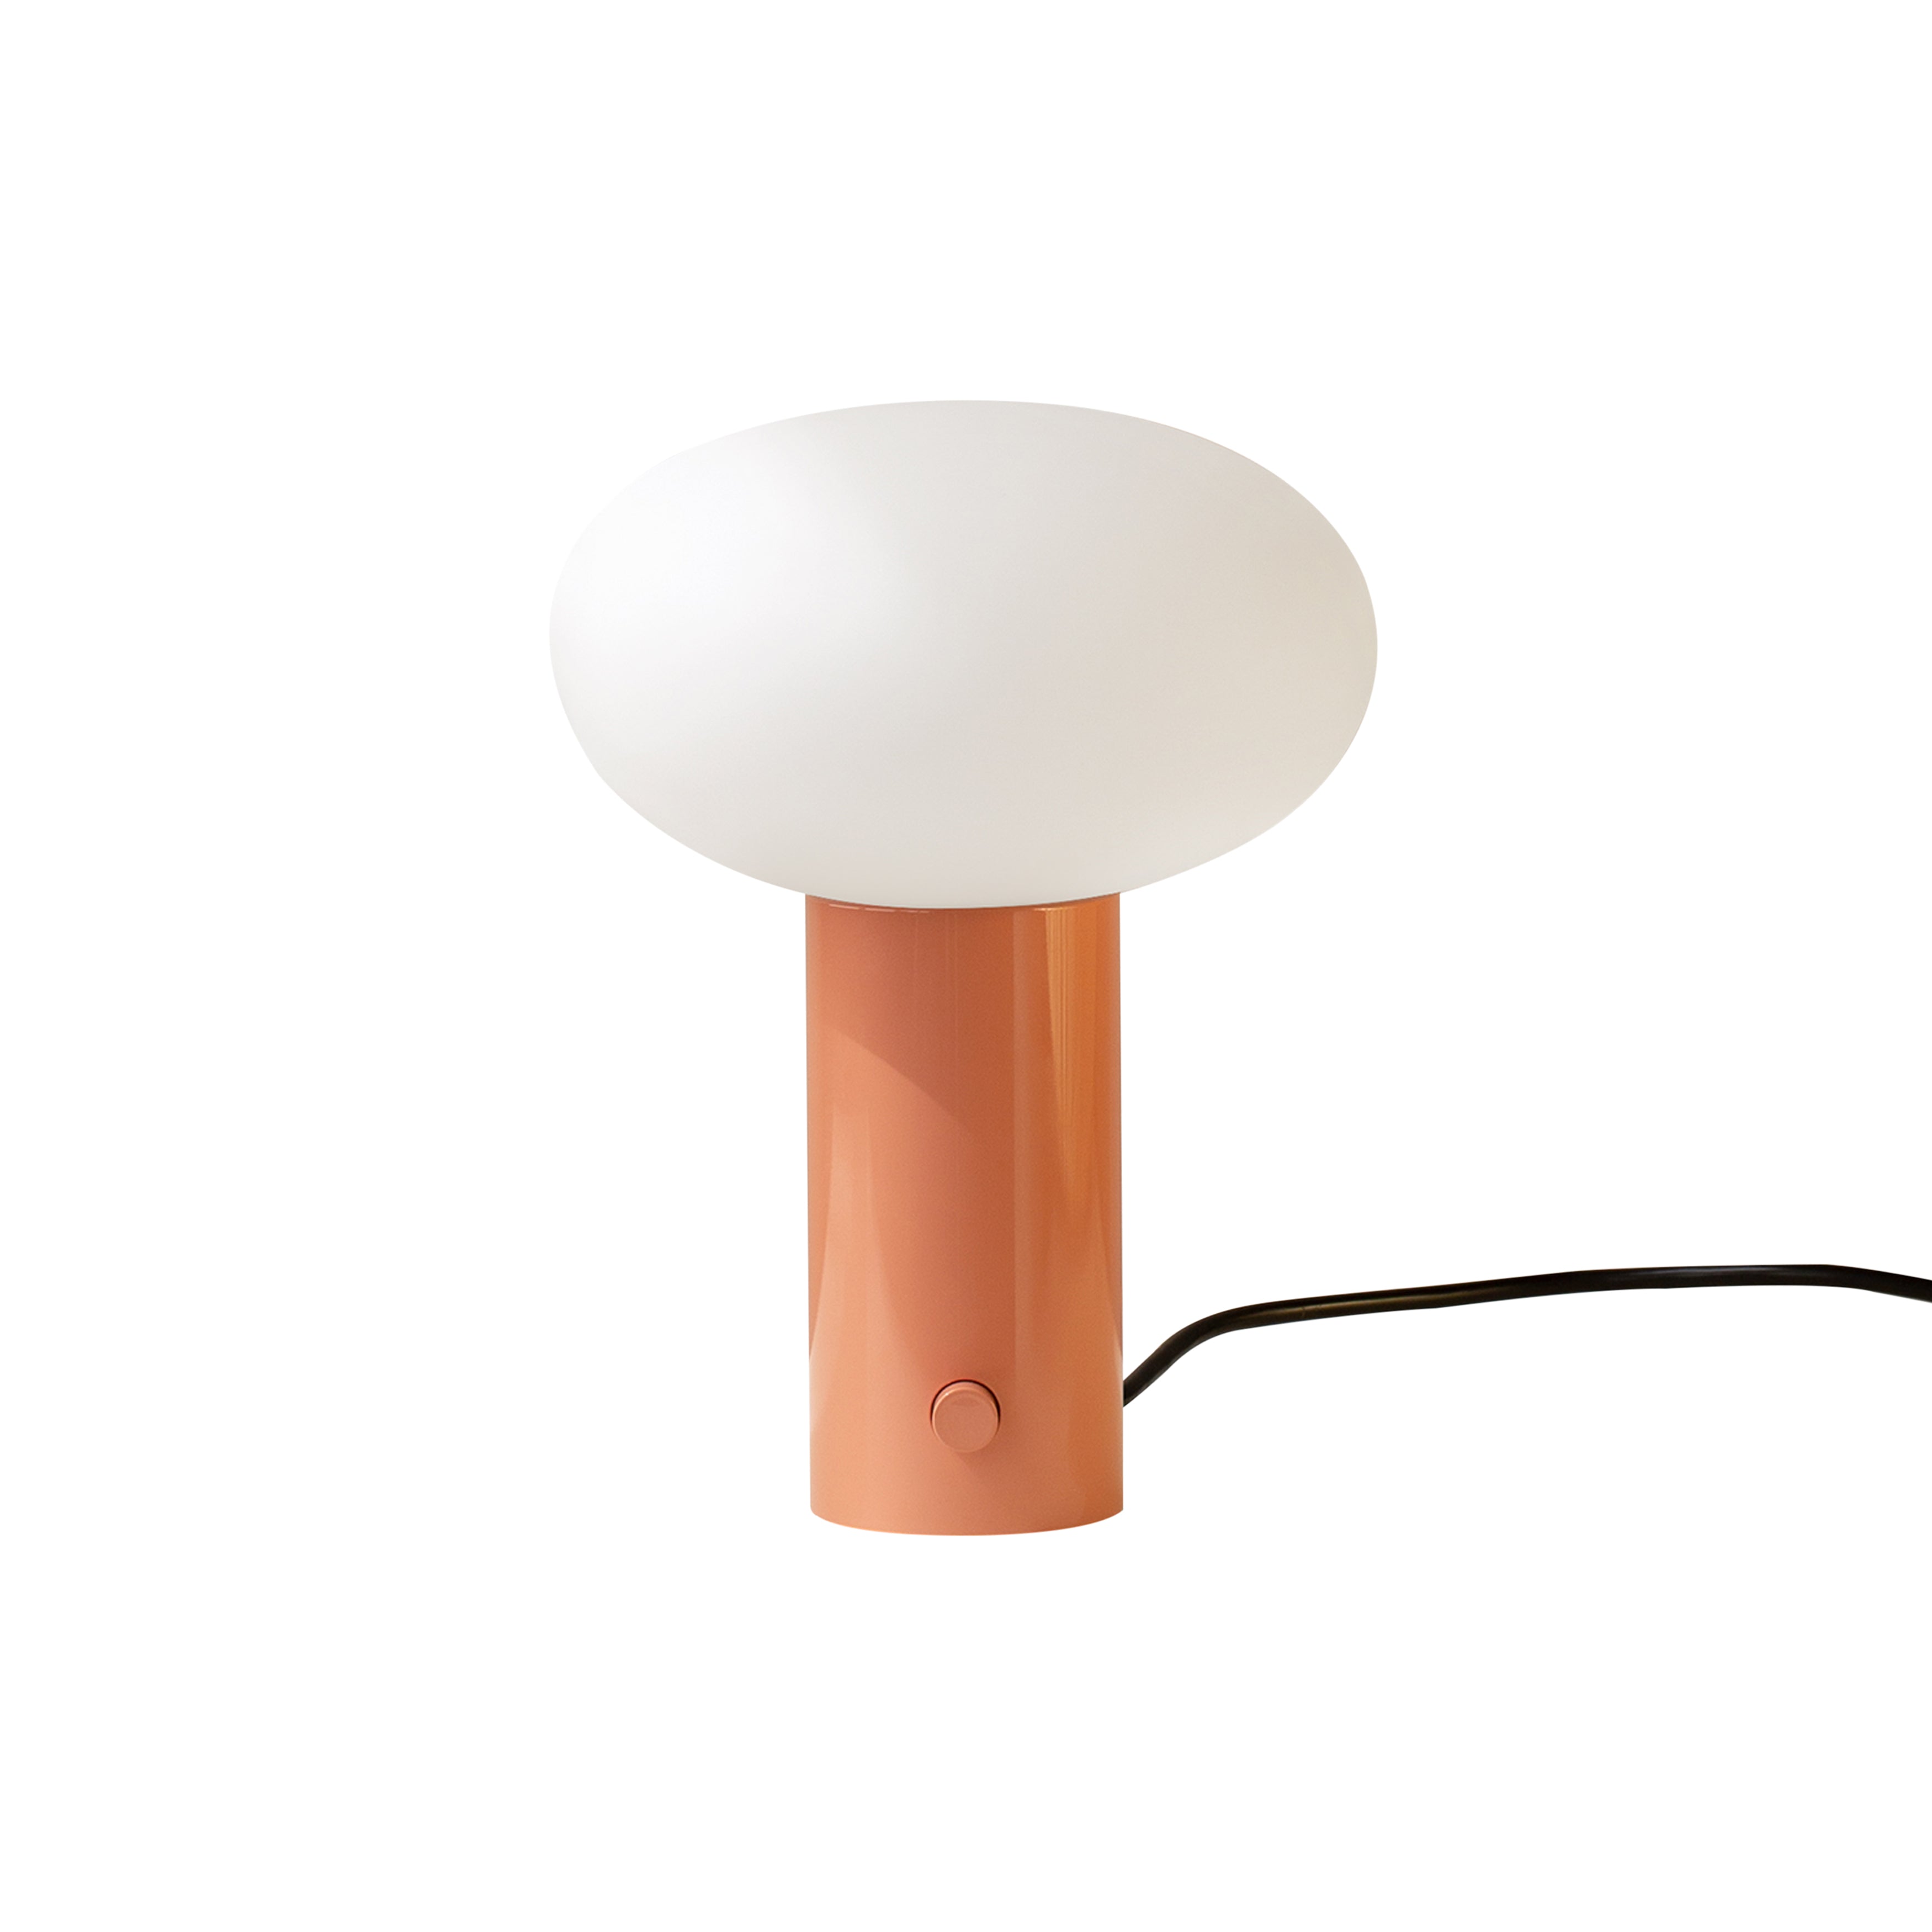 Mushroom Table Lamp: Peach